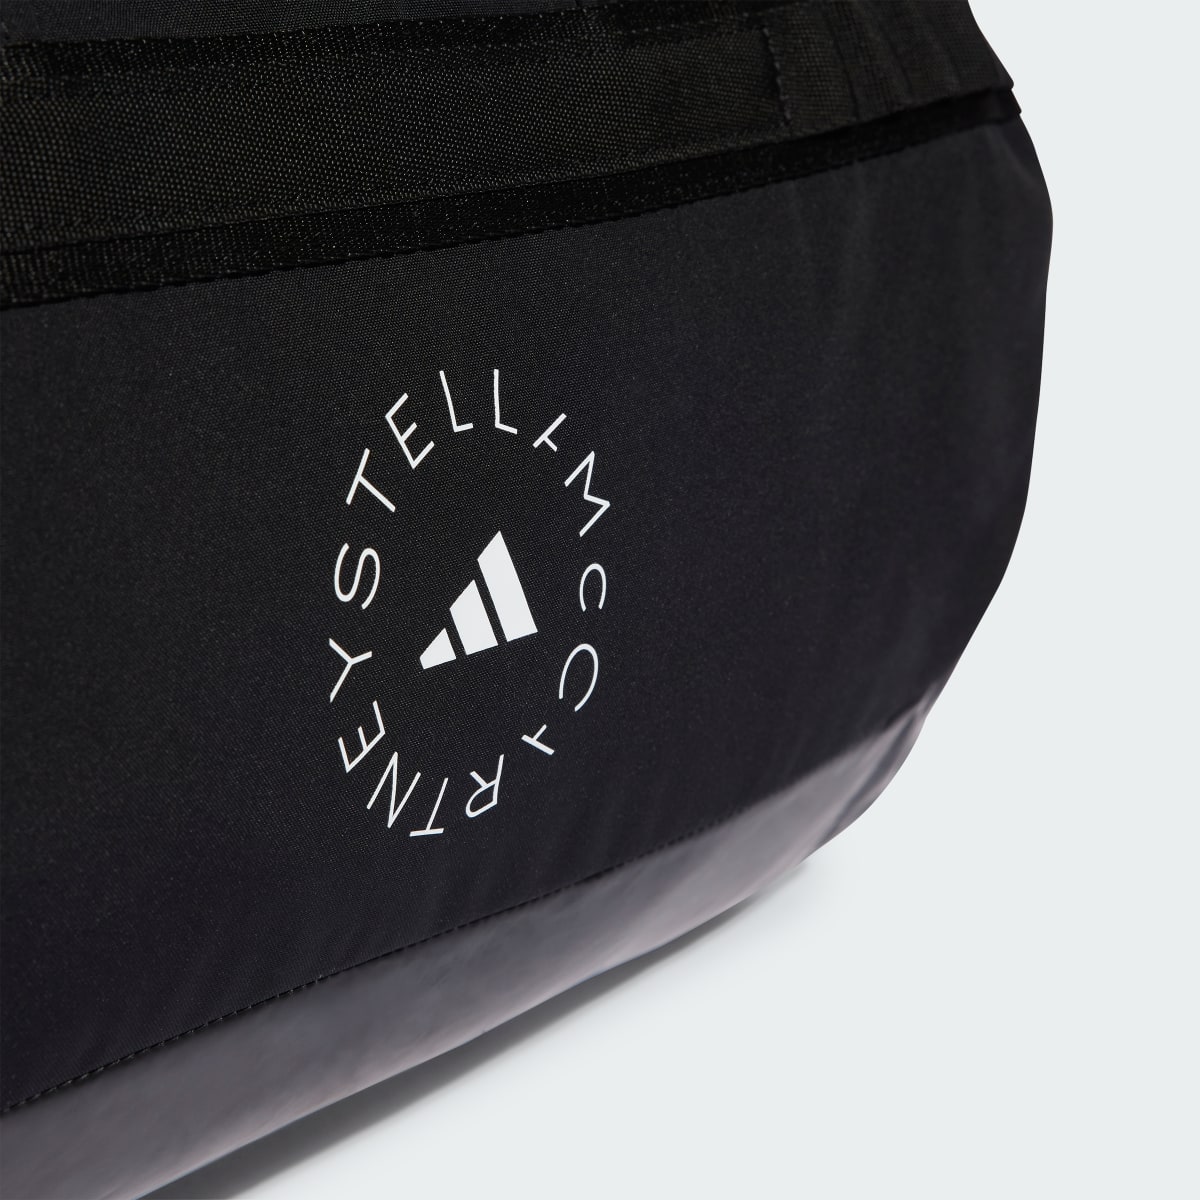 Adidas by Stella McCartney 24/7 Bag. 6